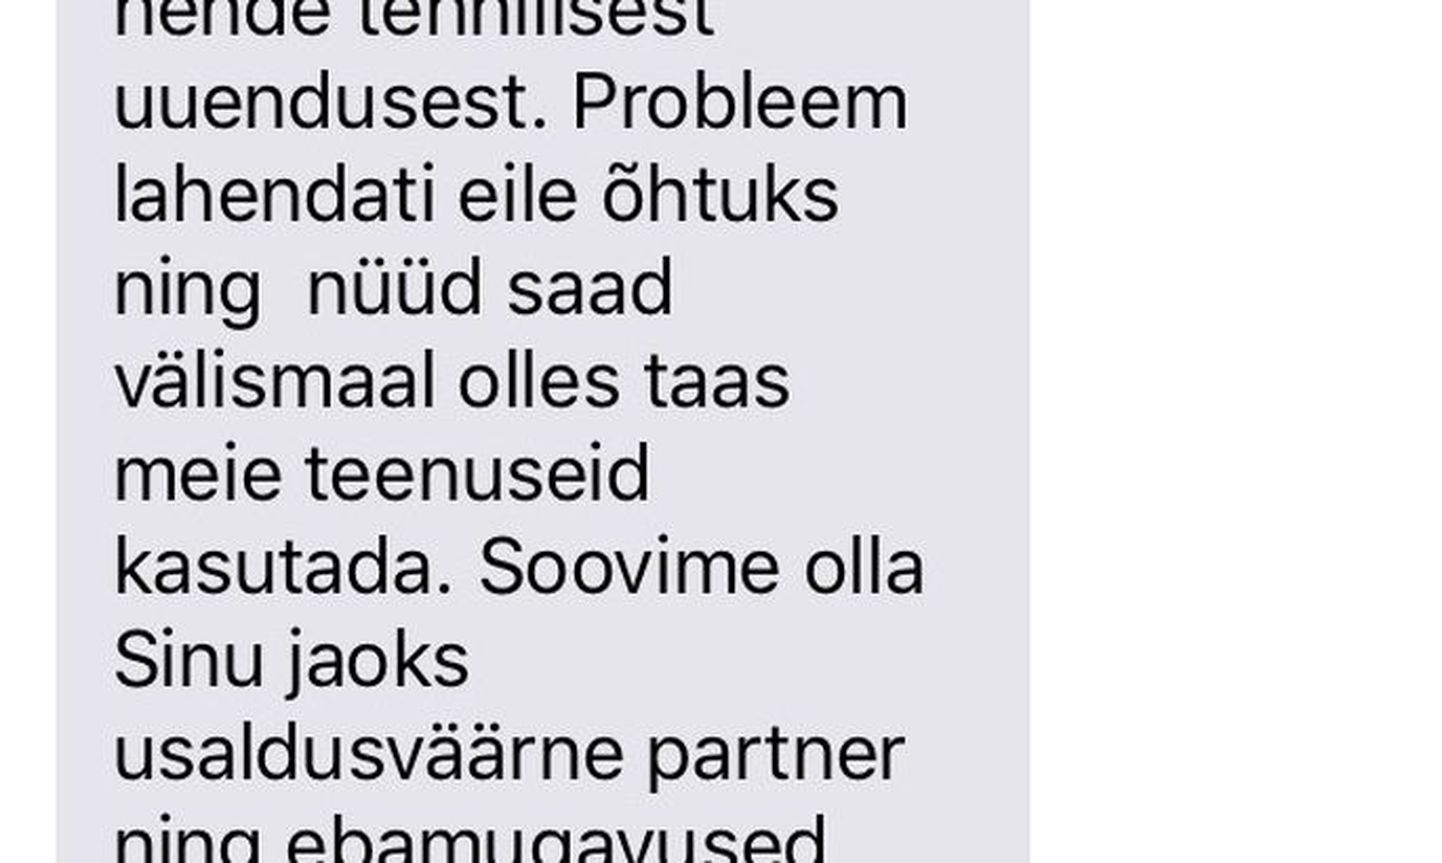 Такое сообщение прислал Tele2 своему клиенту, находящемуся в Финляндии.